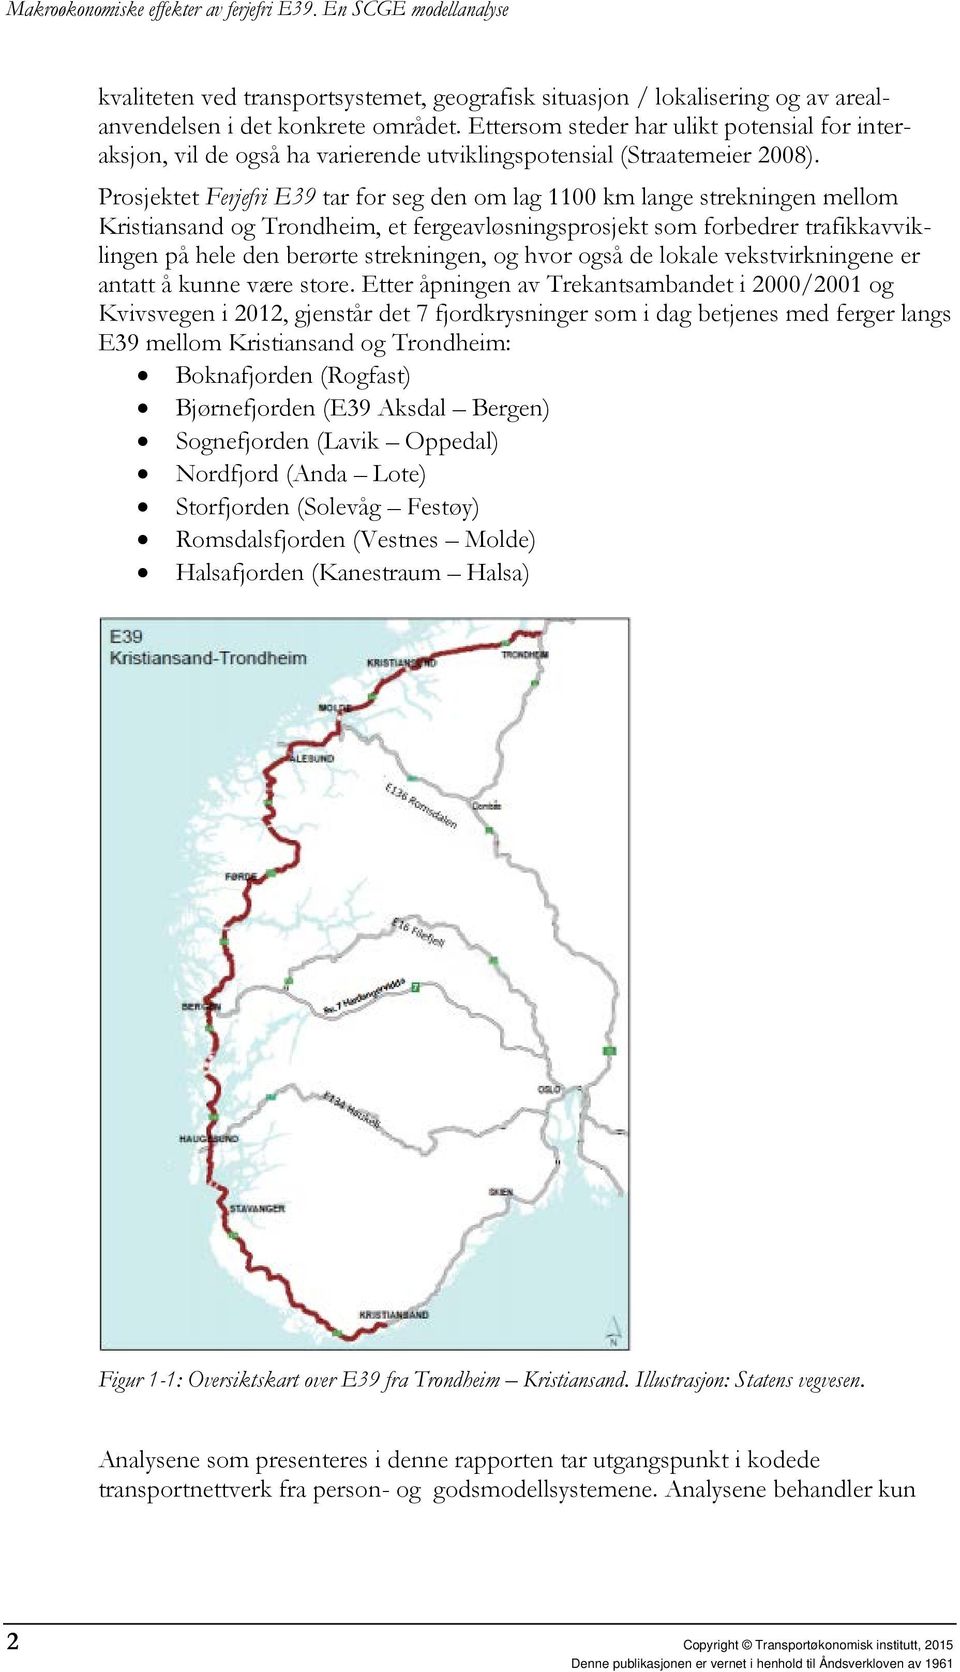 Prosjektet Ferjefri E39 tar for seg den om lag 1100 km lange strekningen mellom Kristiansand og Trondheim, et fergeavløsningsprosjekt som forbedrer trafikkavviklingen på hele den berørte strekningen,